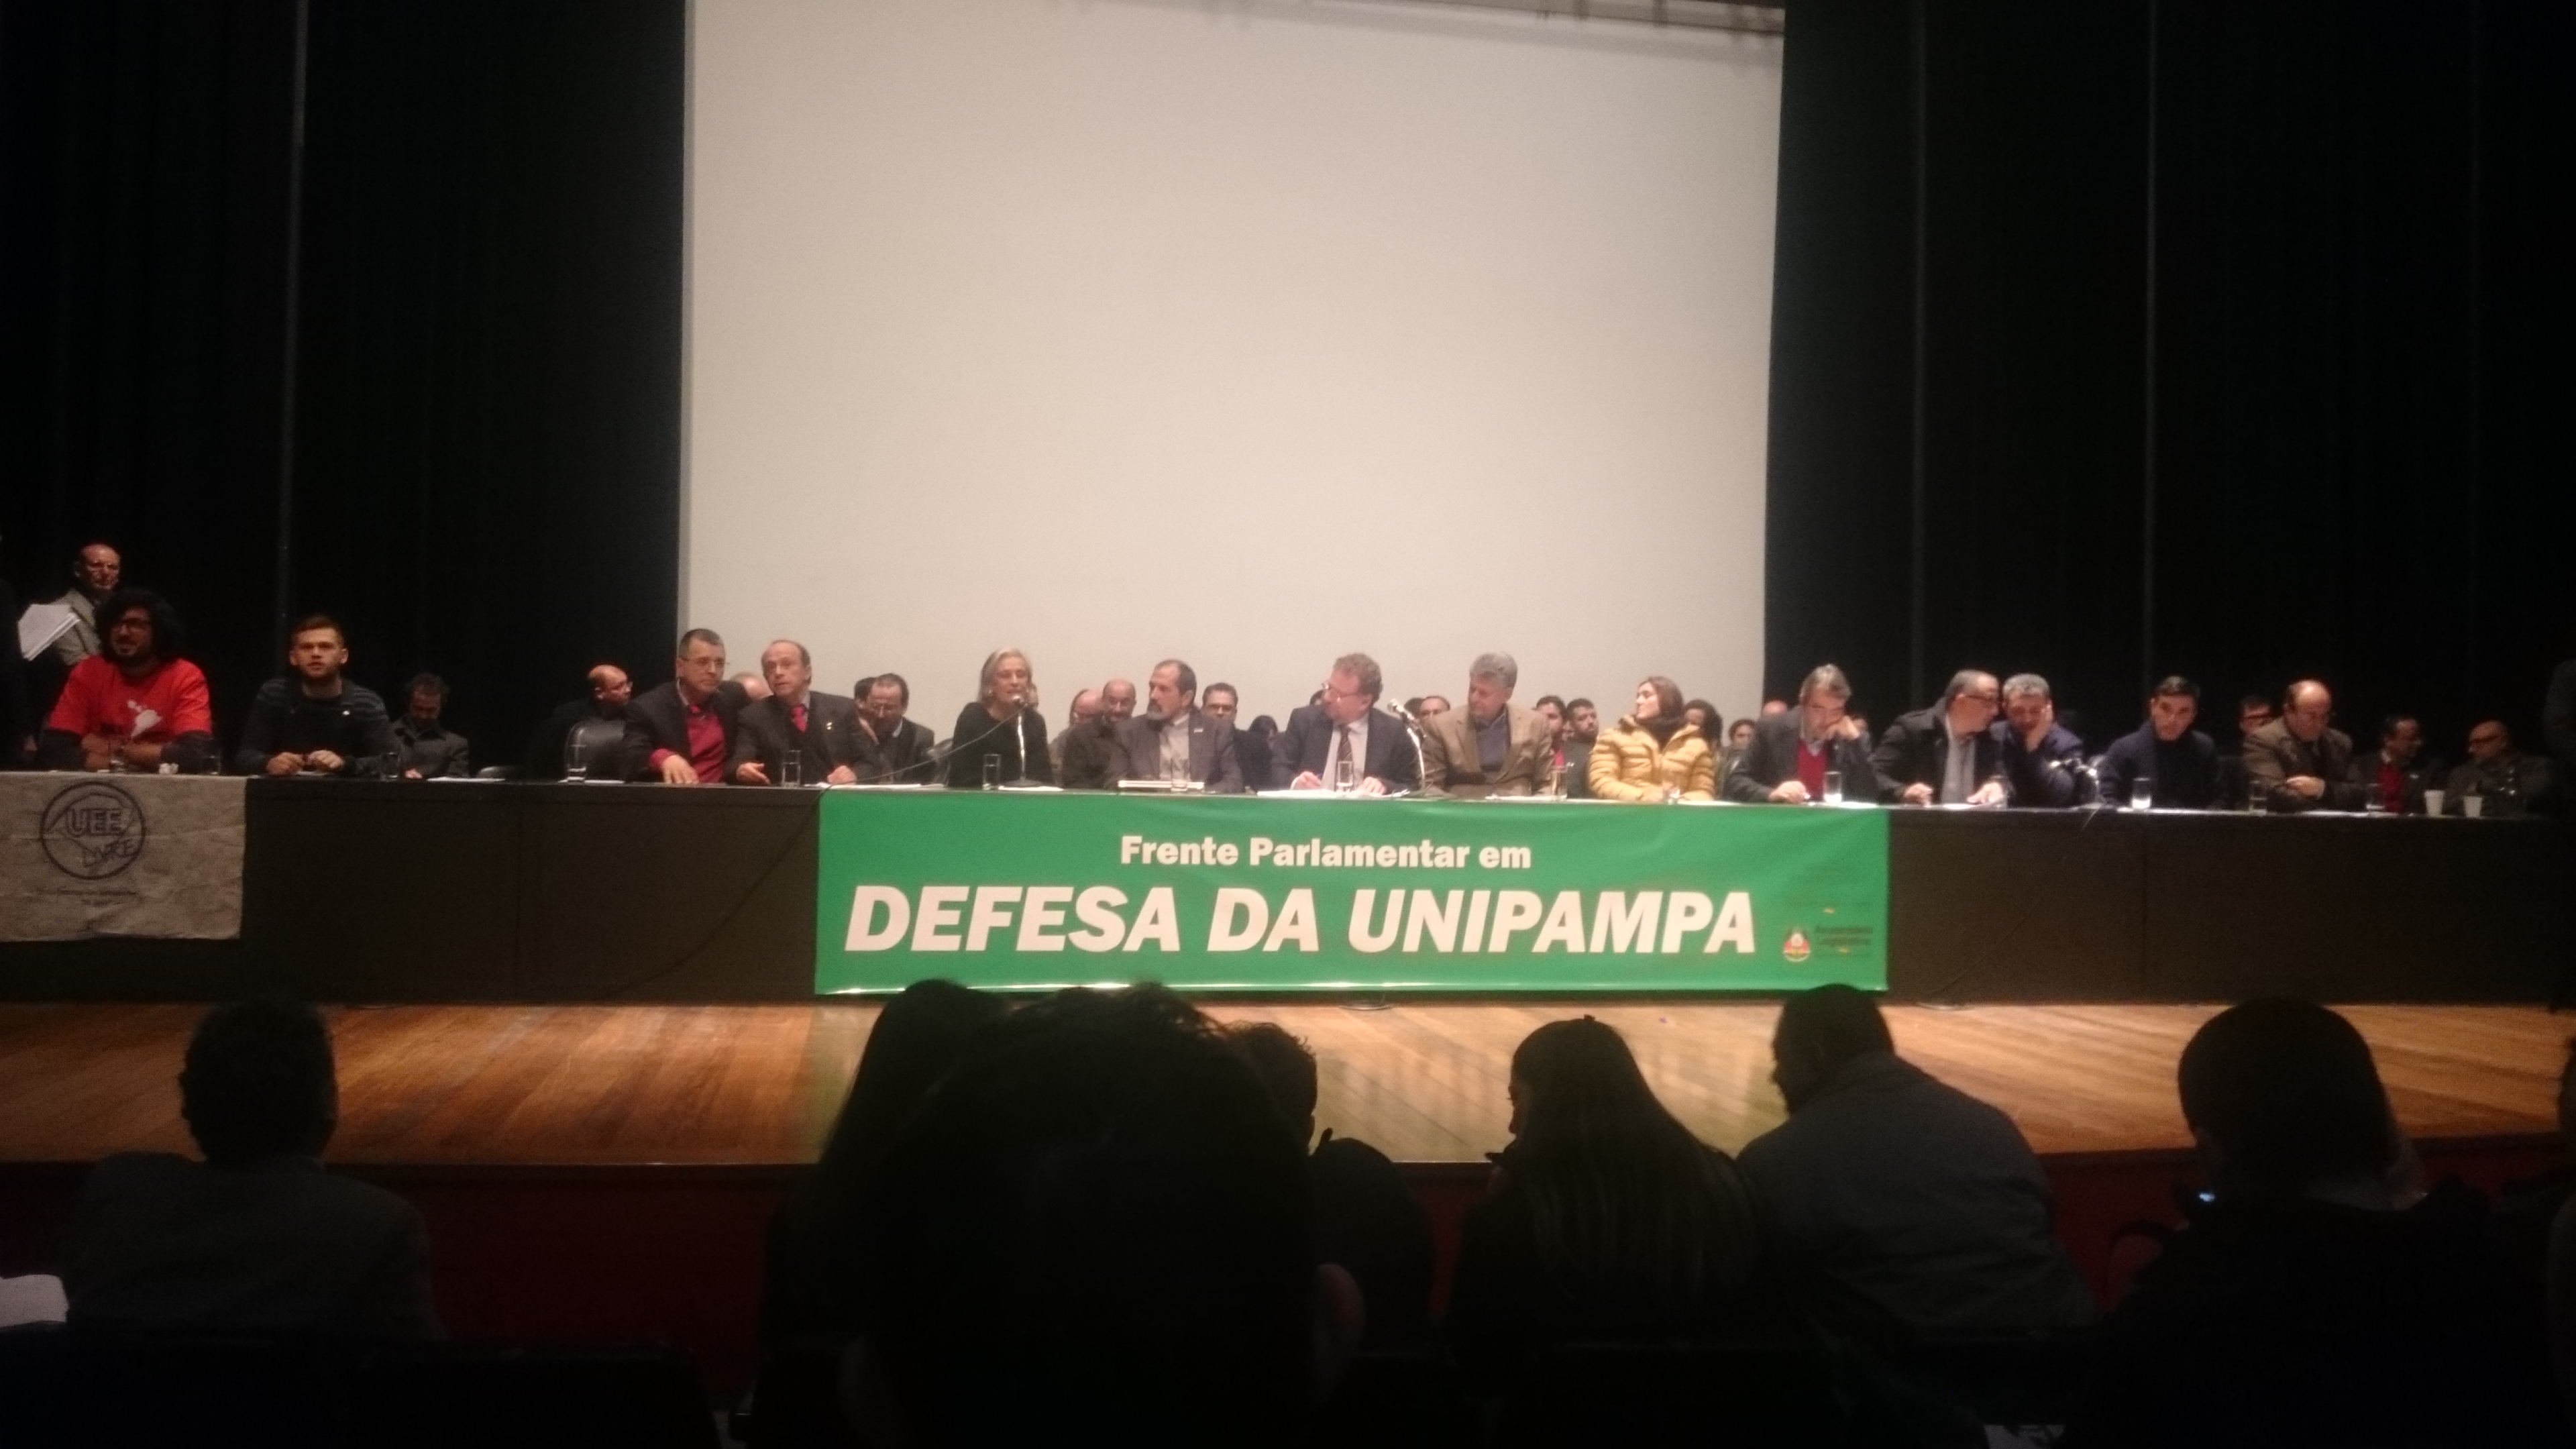 Palco da Assembleia Legislativa de Porto Alegre com a mesa de representantes parlamentares e da UNIPAMPA e com uma faixa verde: Frente Parlamentar em Defesa da UNIPAMPA